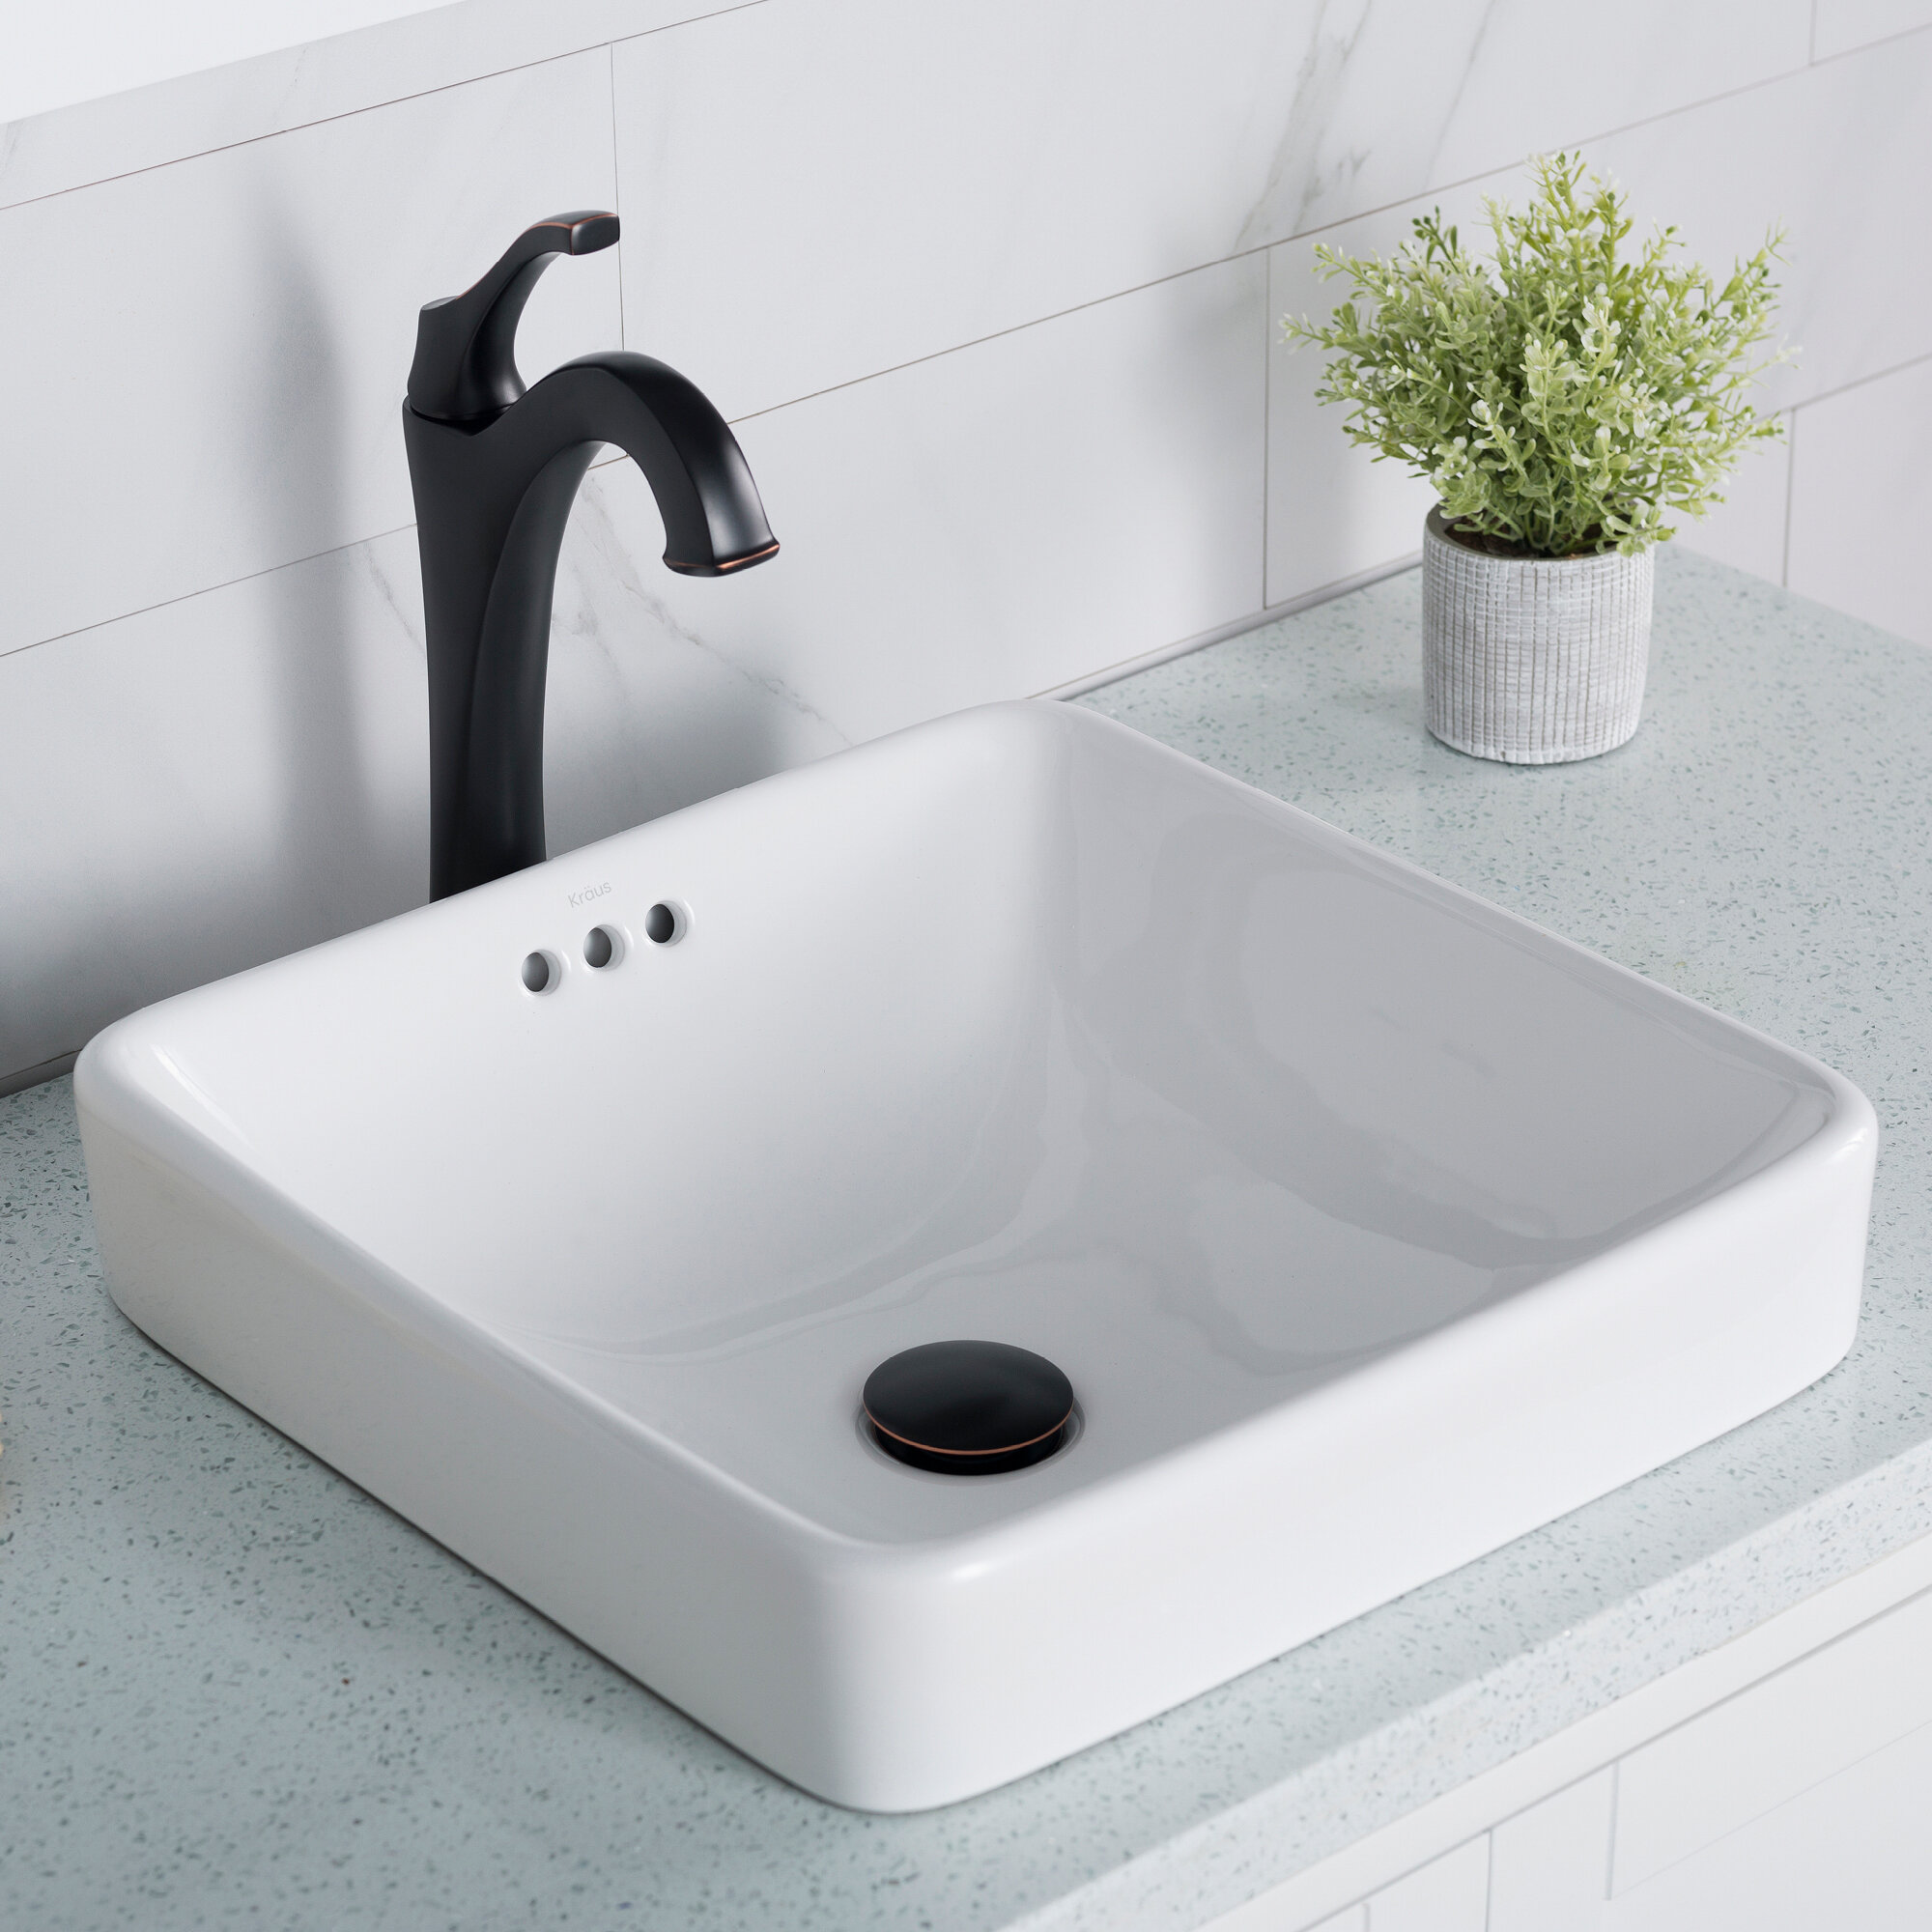 Kcr 281 Kraus Elavo Square Drop In Bathroom Sink With Overflow Reviews Wayfair